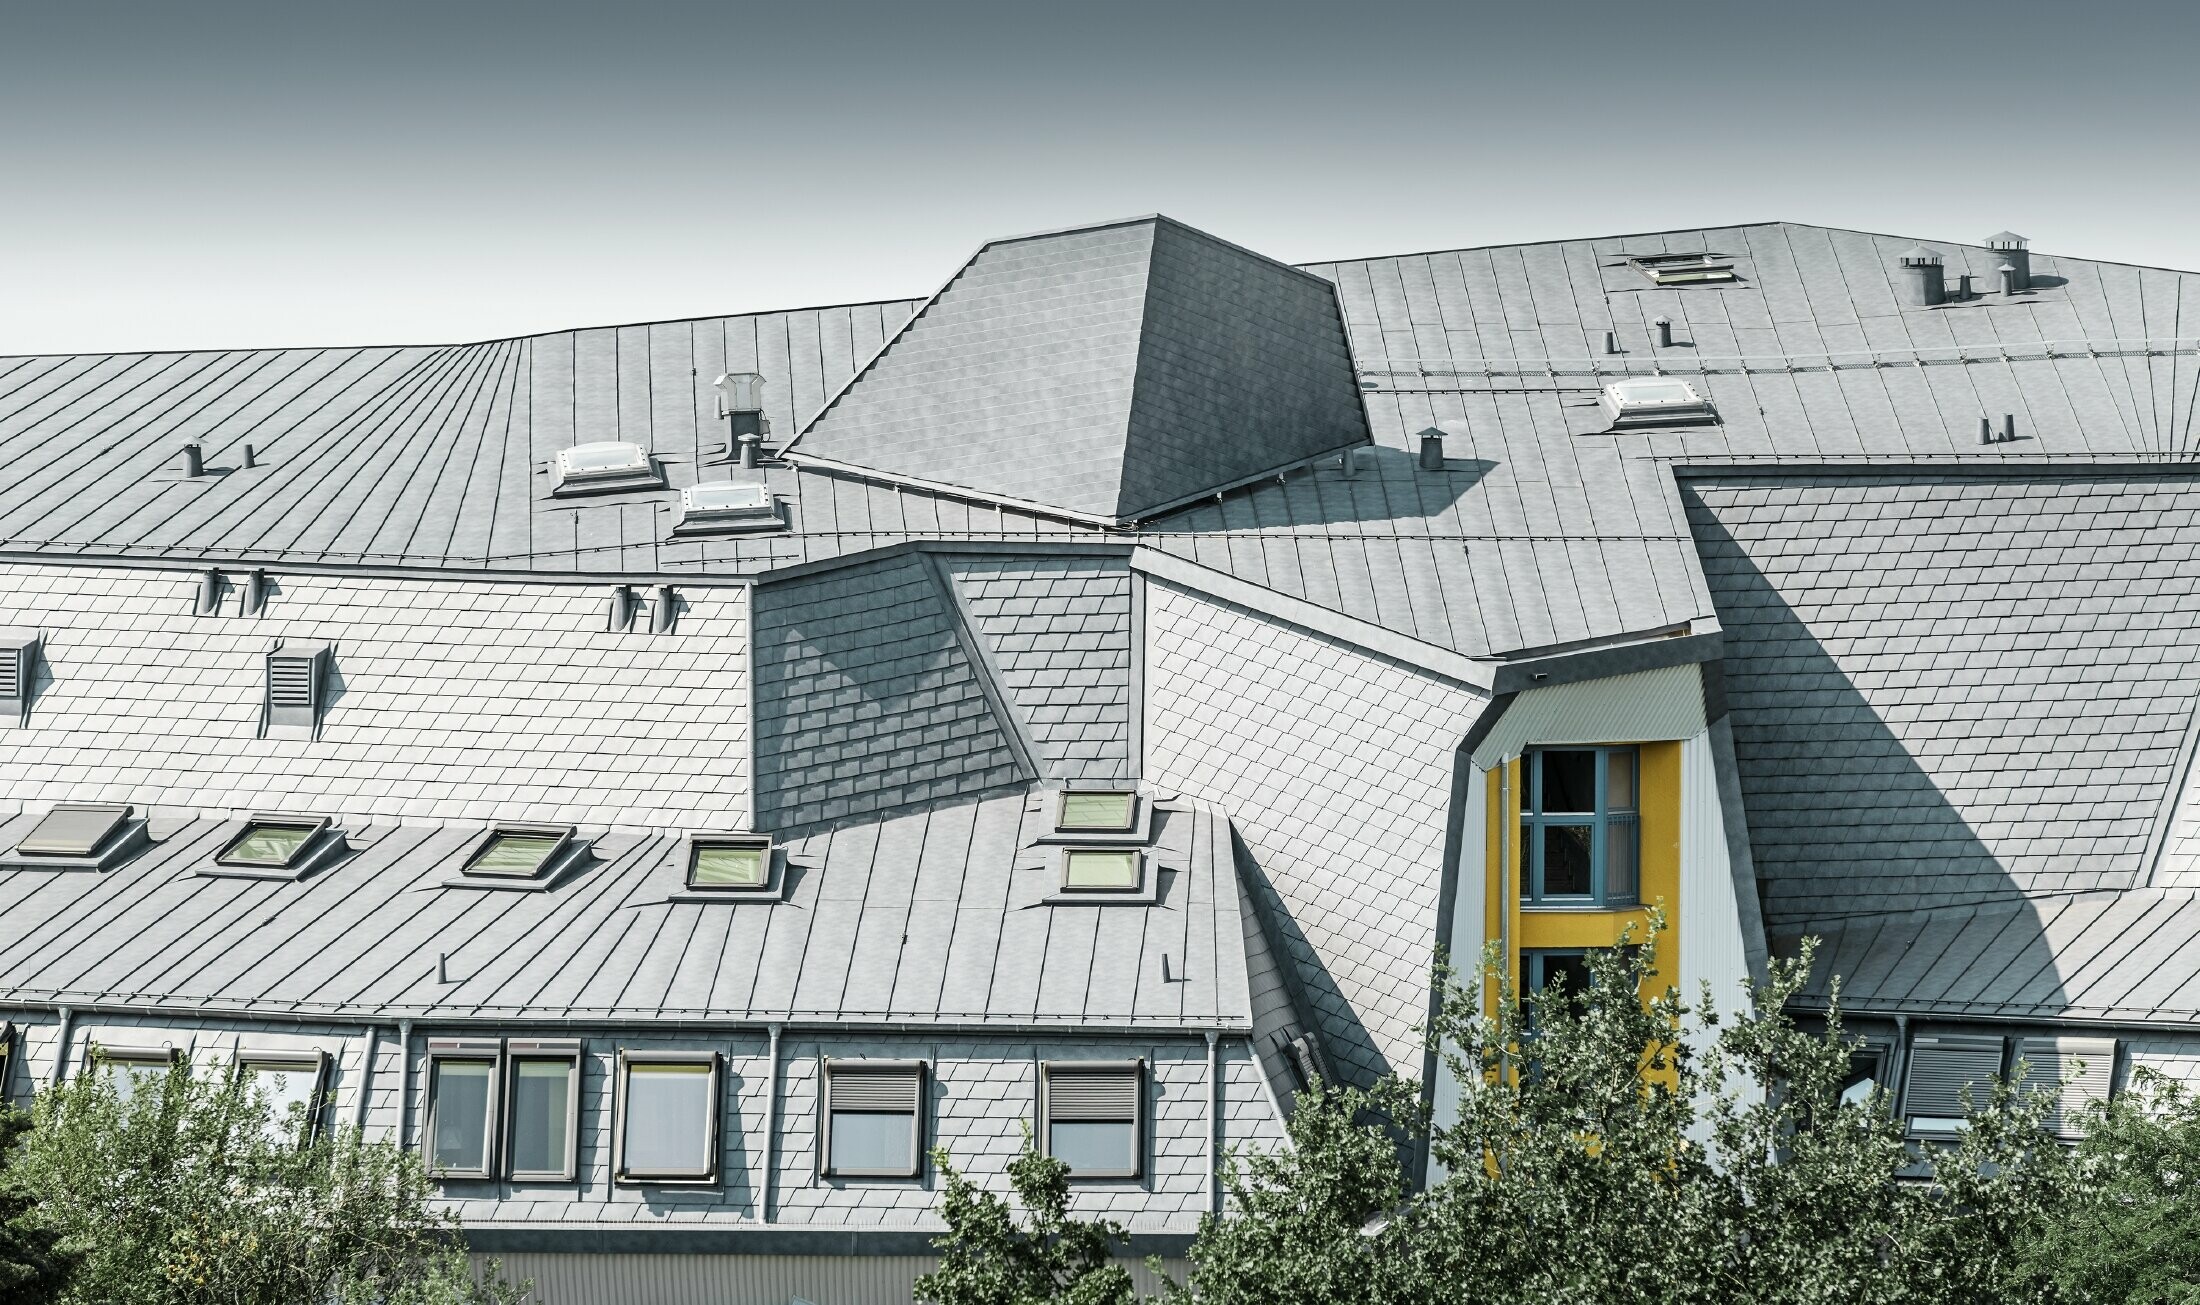 Ingenieus geconstrueerd daklandschap met dakramen en diverse hoeken bij het Haus Aja-Textor-Goethe, gedekt met de PREFA dakschindel en Prefalz in steengrijs